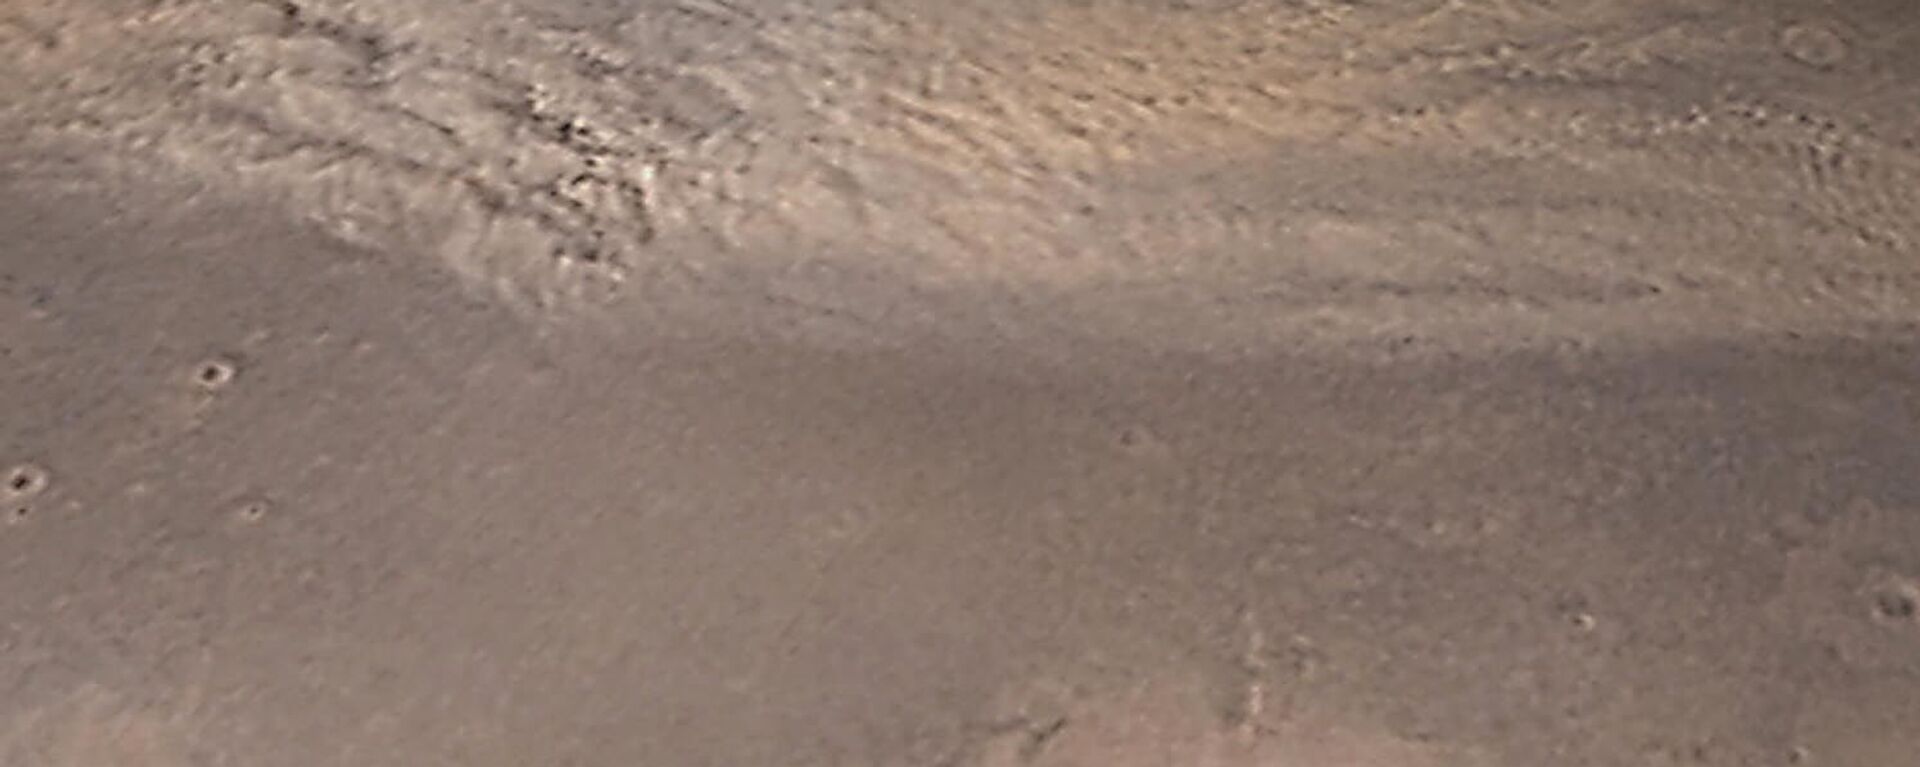  تُظهر صورة الكاميرا المدارية (MOC) الخاصة بالمساح العالمي للمريخ التابع لناسا (MGS)أرض العرب في المريخ -  - سبوتنيك عربي, 1920, 30.06.2022